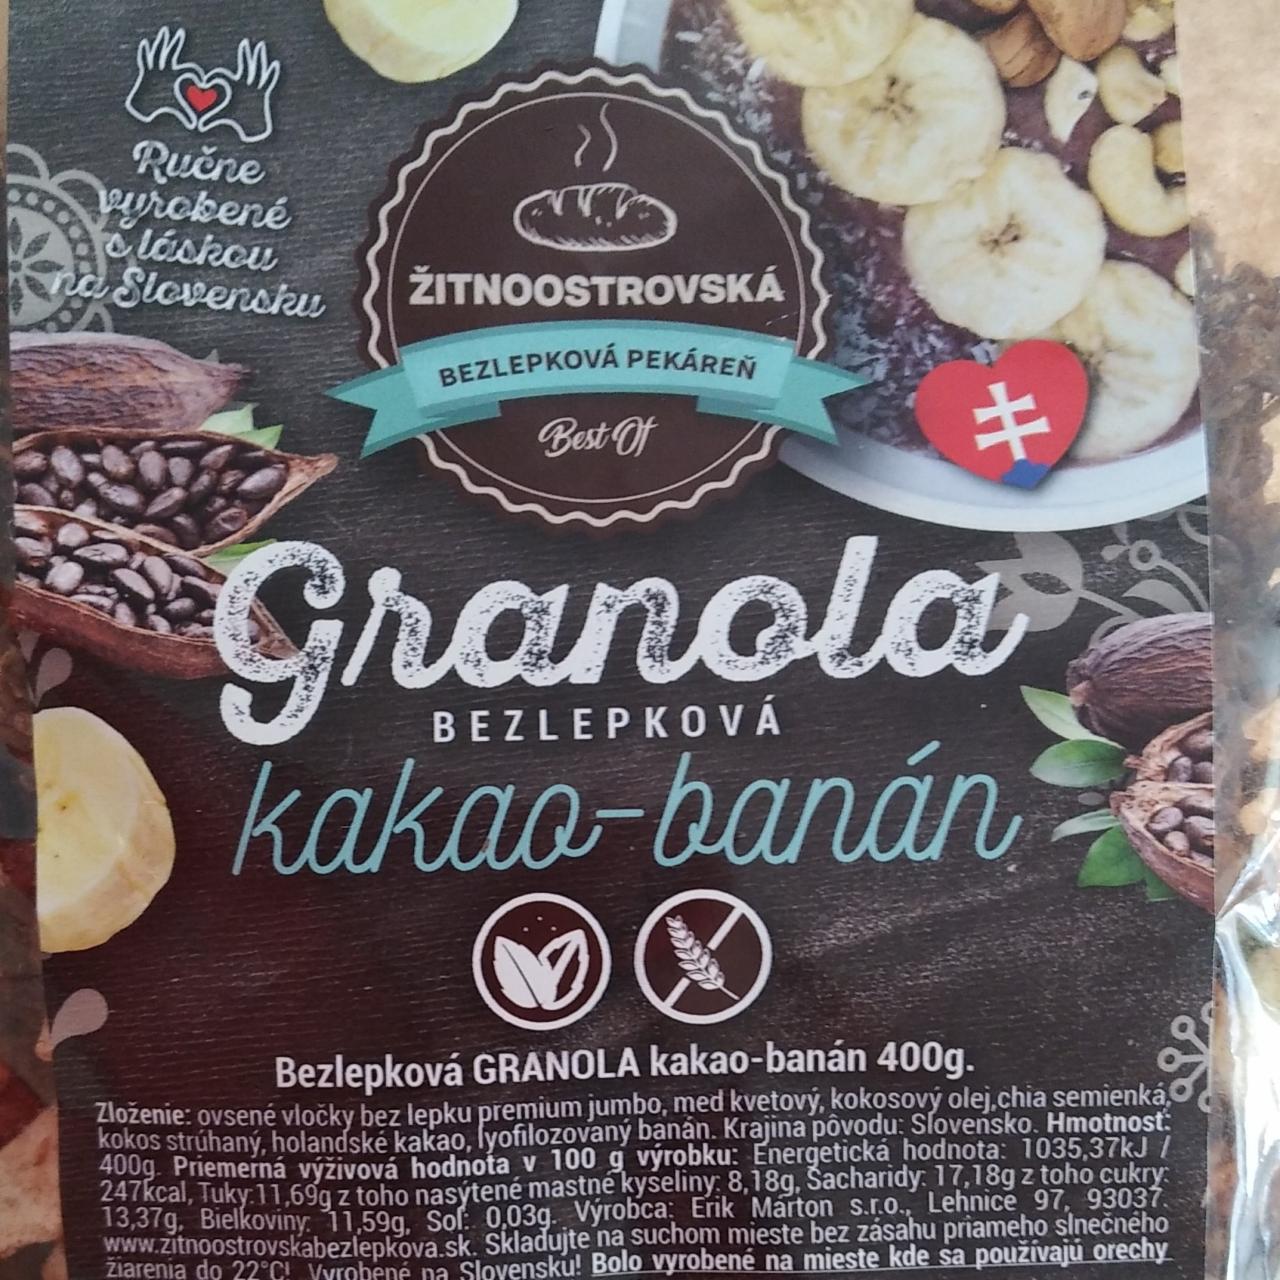 Fotografie - Granola bezlepková kakao-banán